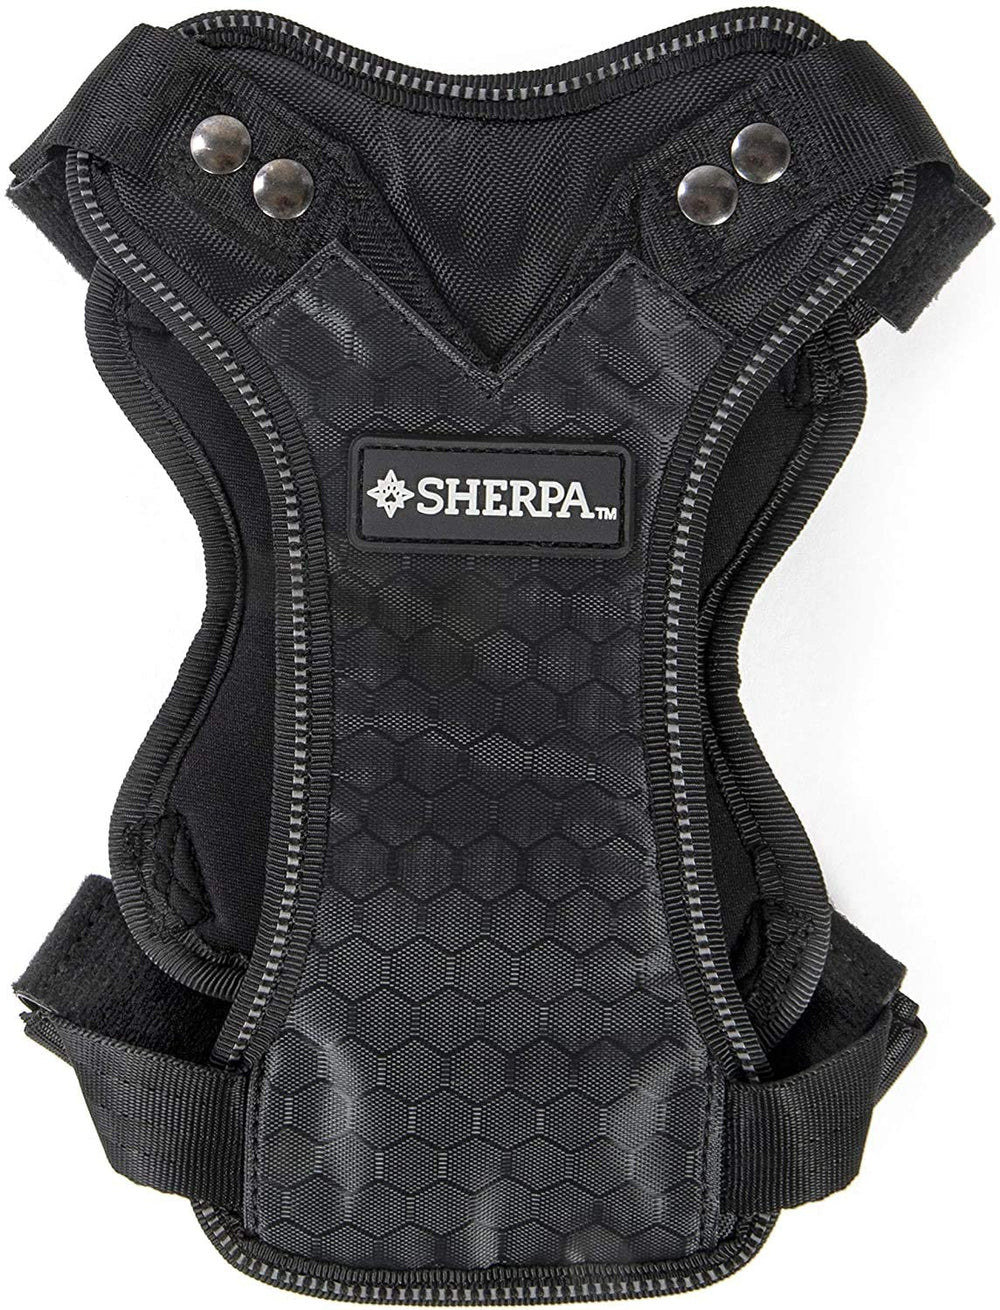 Sherpa™ Car harness